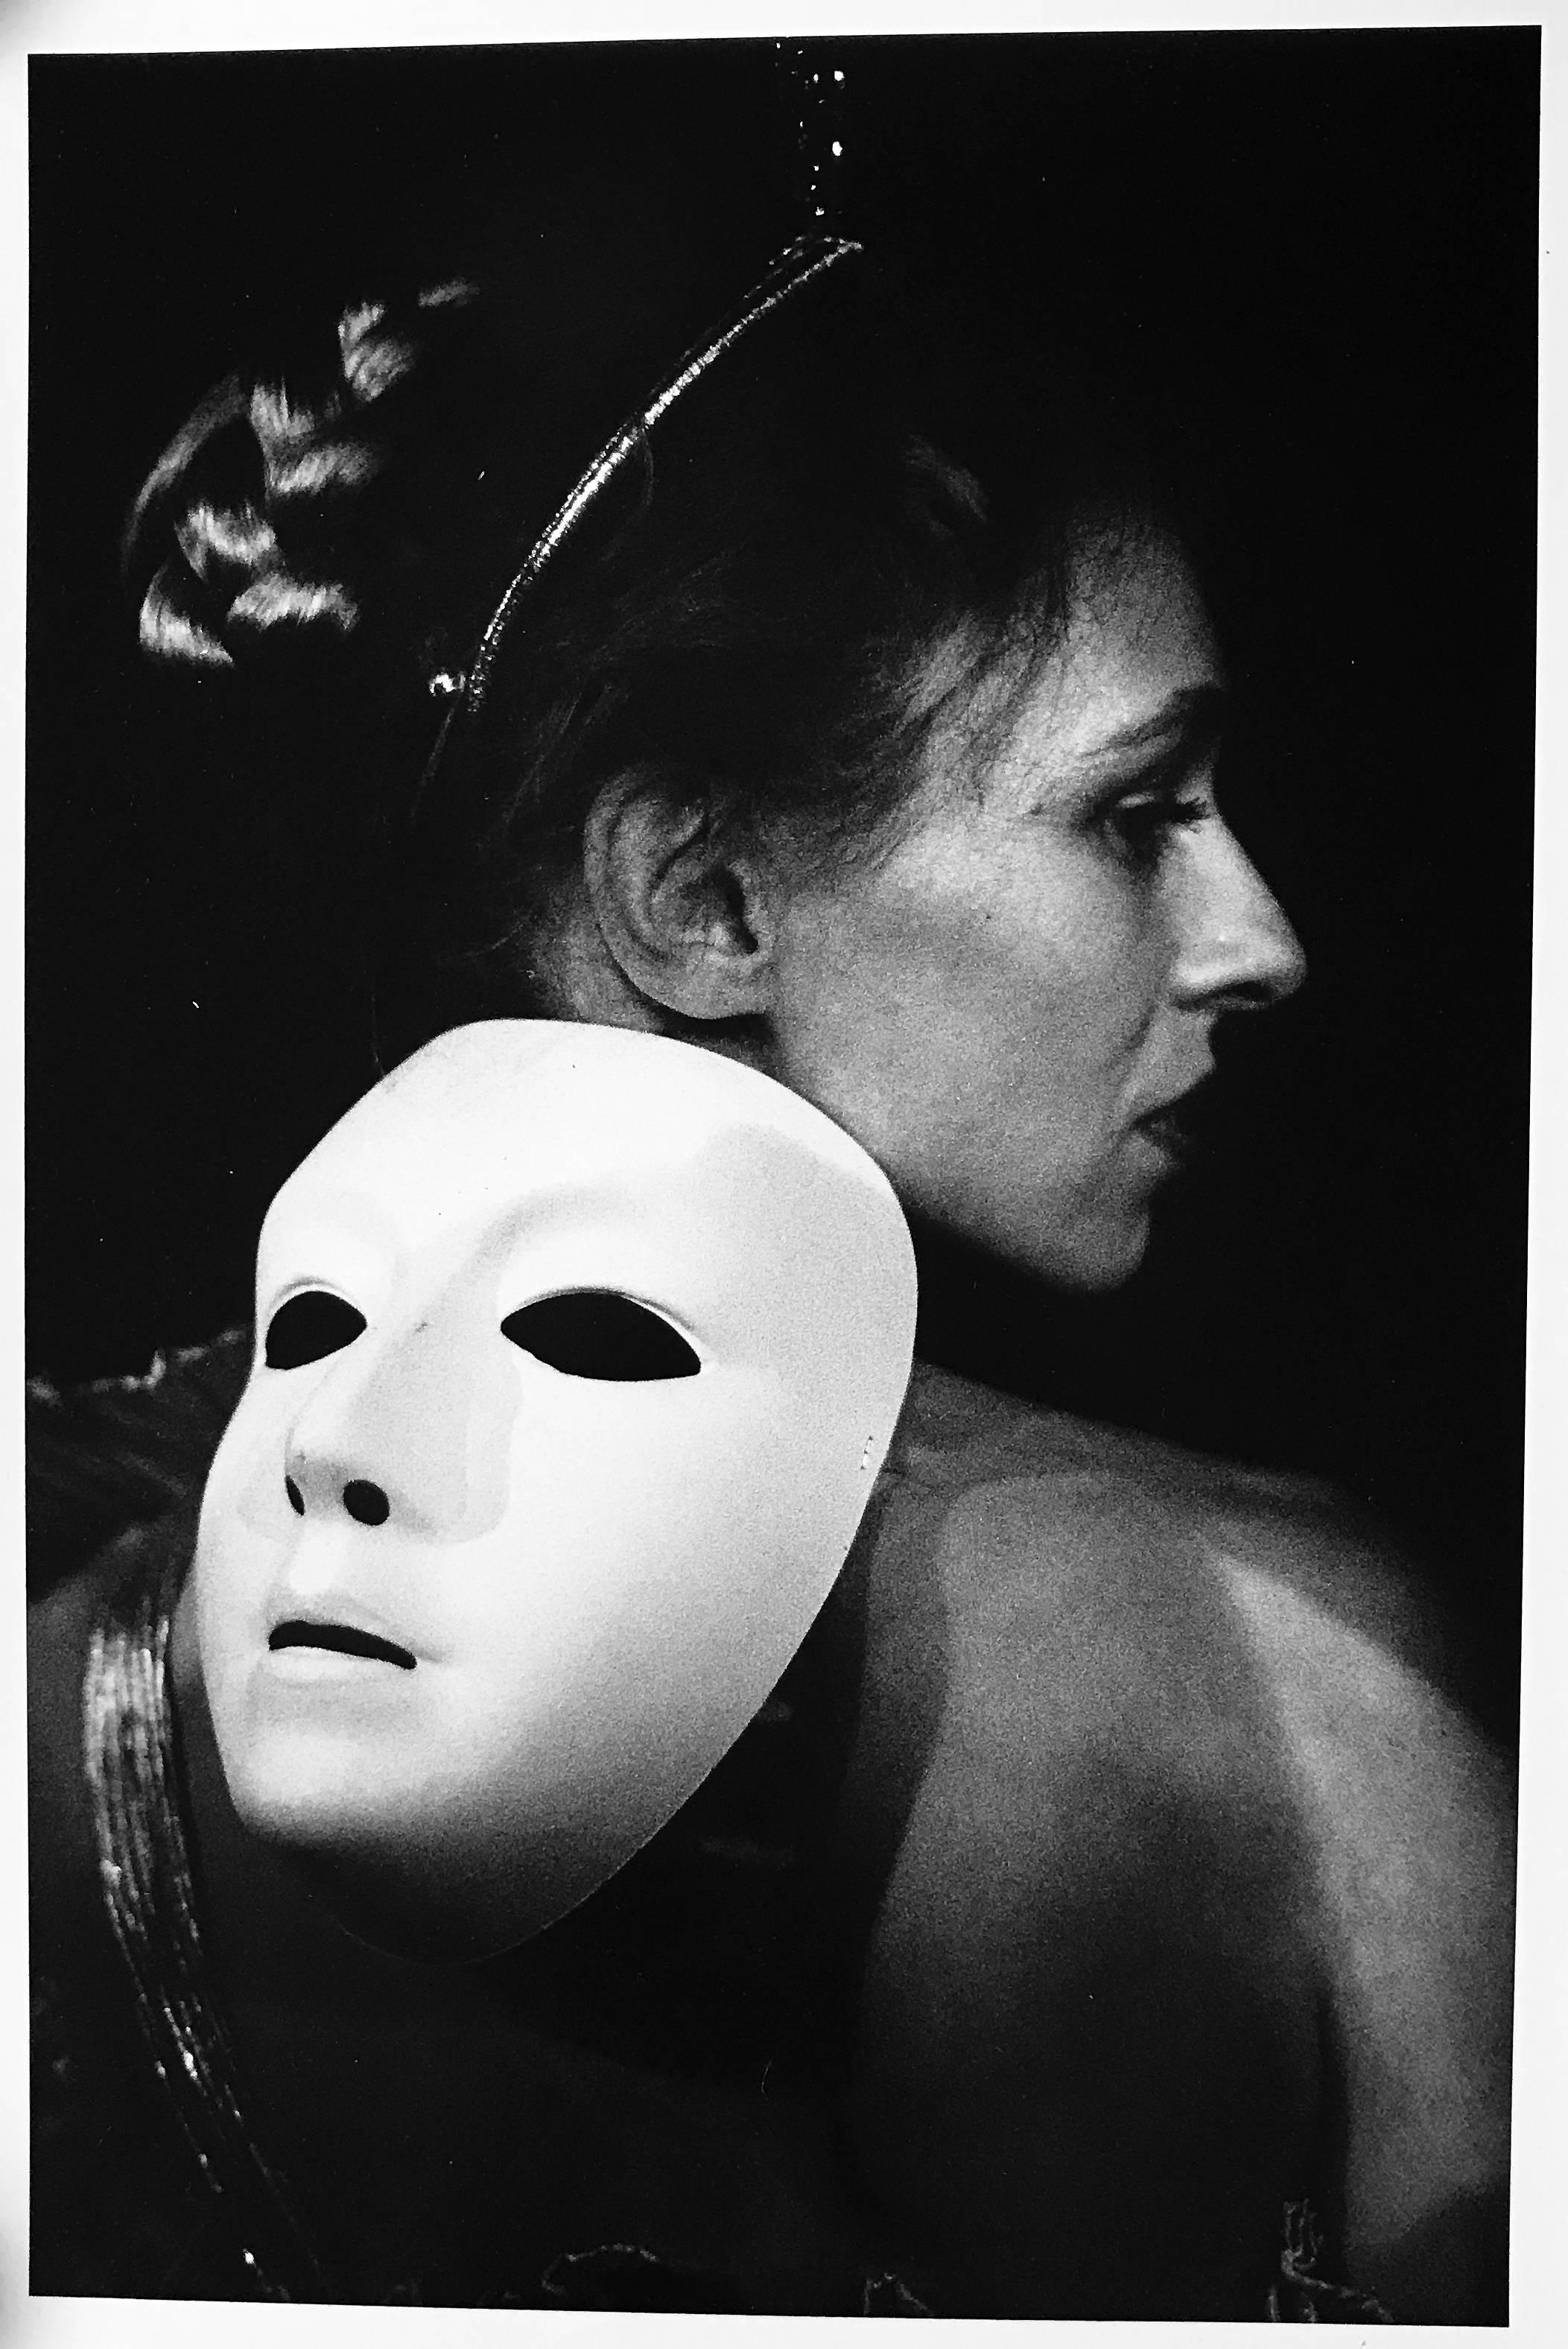 Diane die Jägerin, Frankreich, von der Mythologie inspiriertes Schwarz-Weiß-Porträtfoto – Photograph von Roberta Fineberg